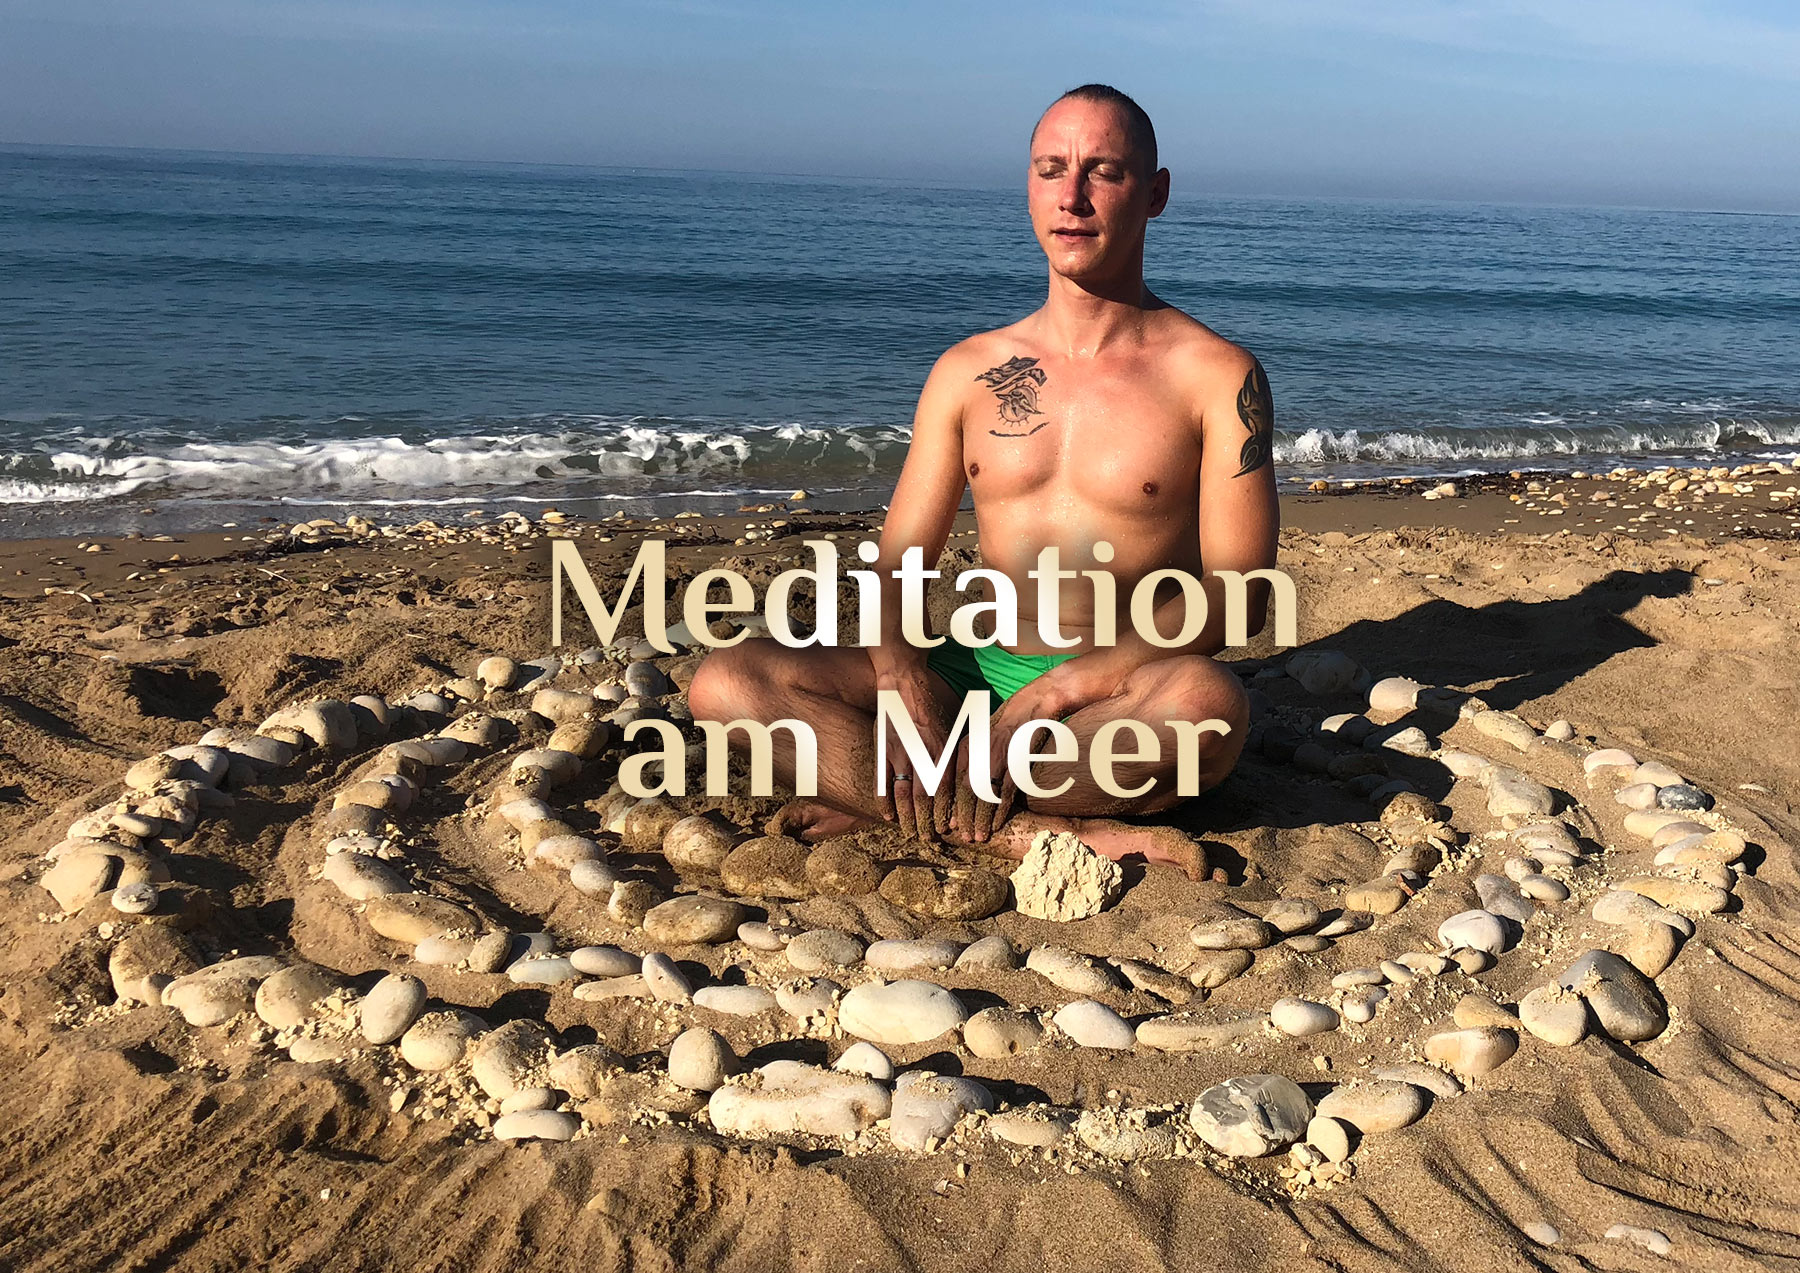 Meditation 🧘🏼‍♂️ in der Steinspirale 🌀 | Elementare Meditation 🧘🏻‍♀️ | Meditation am Meer 🌊